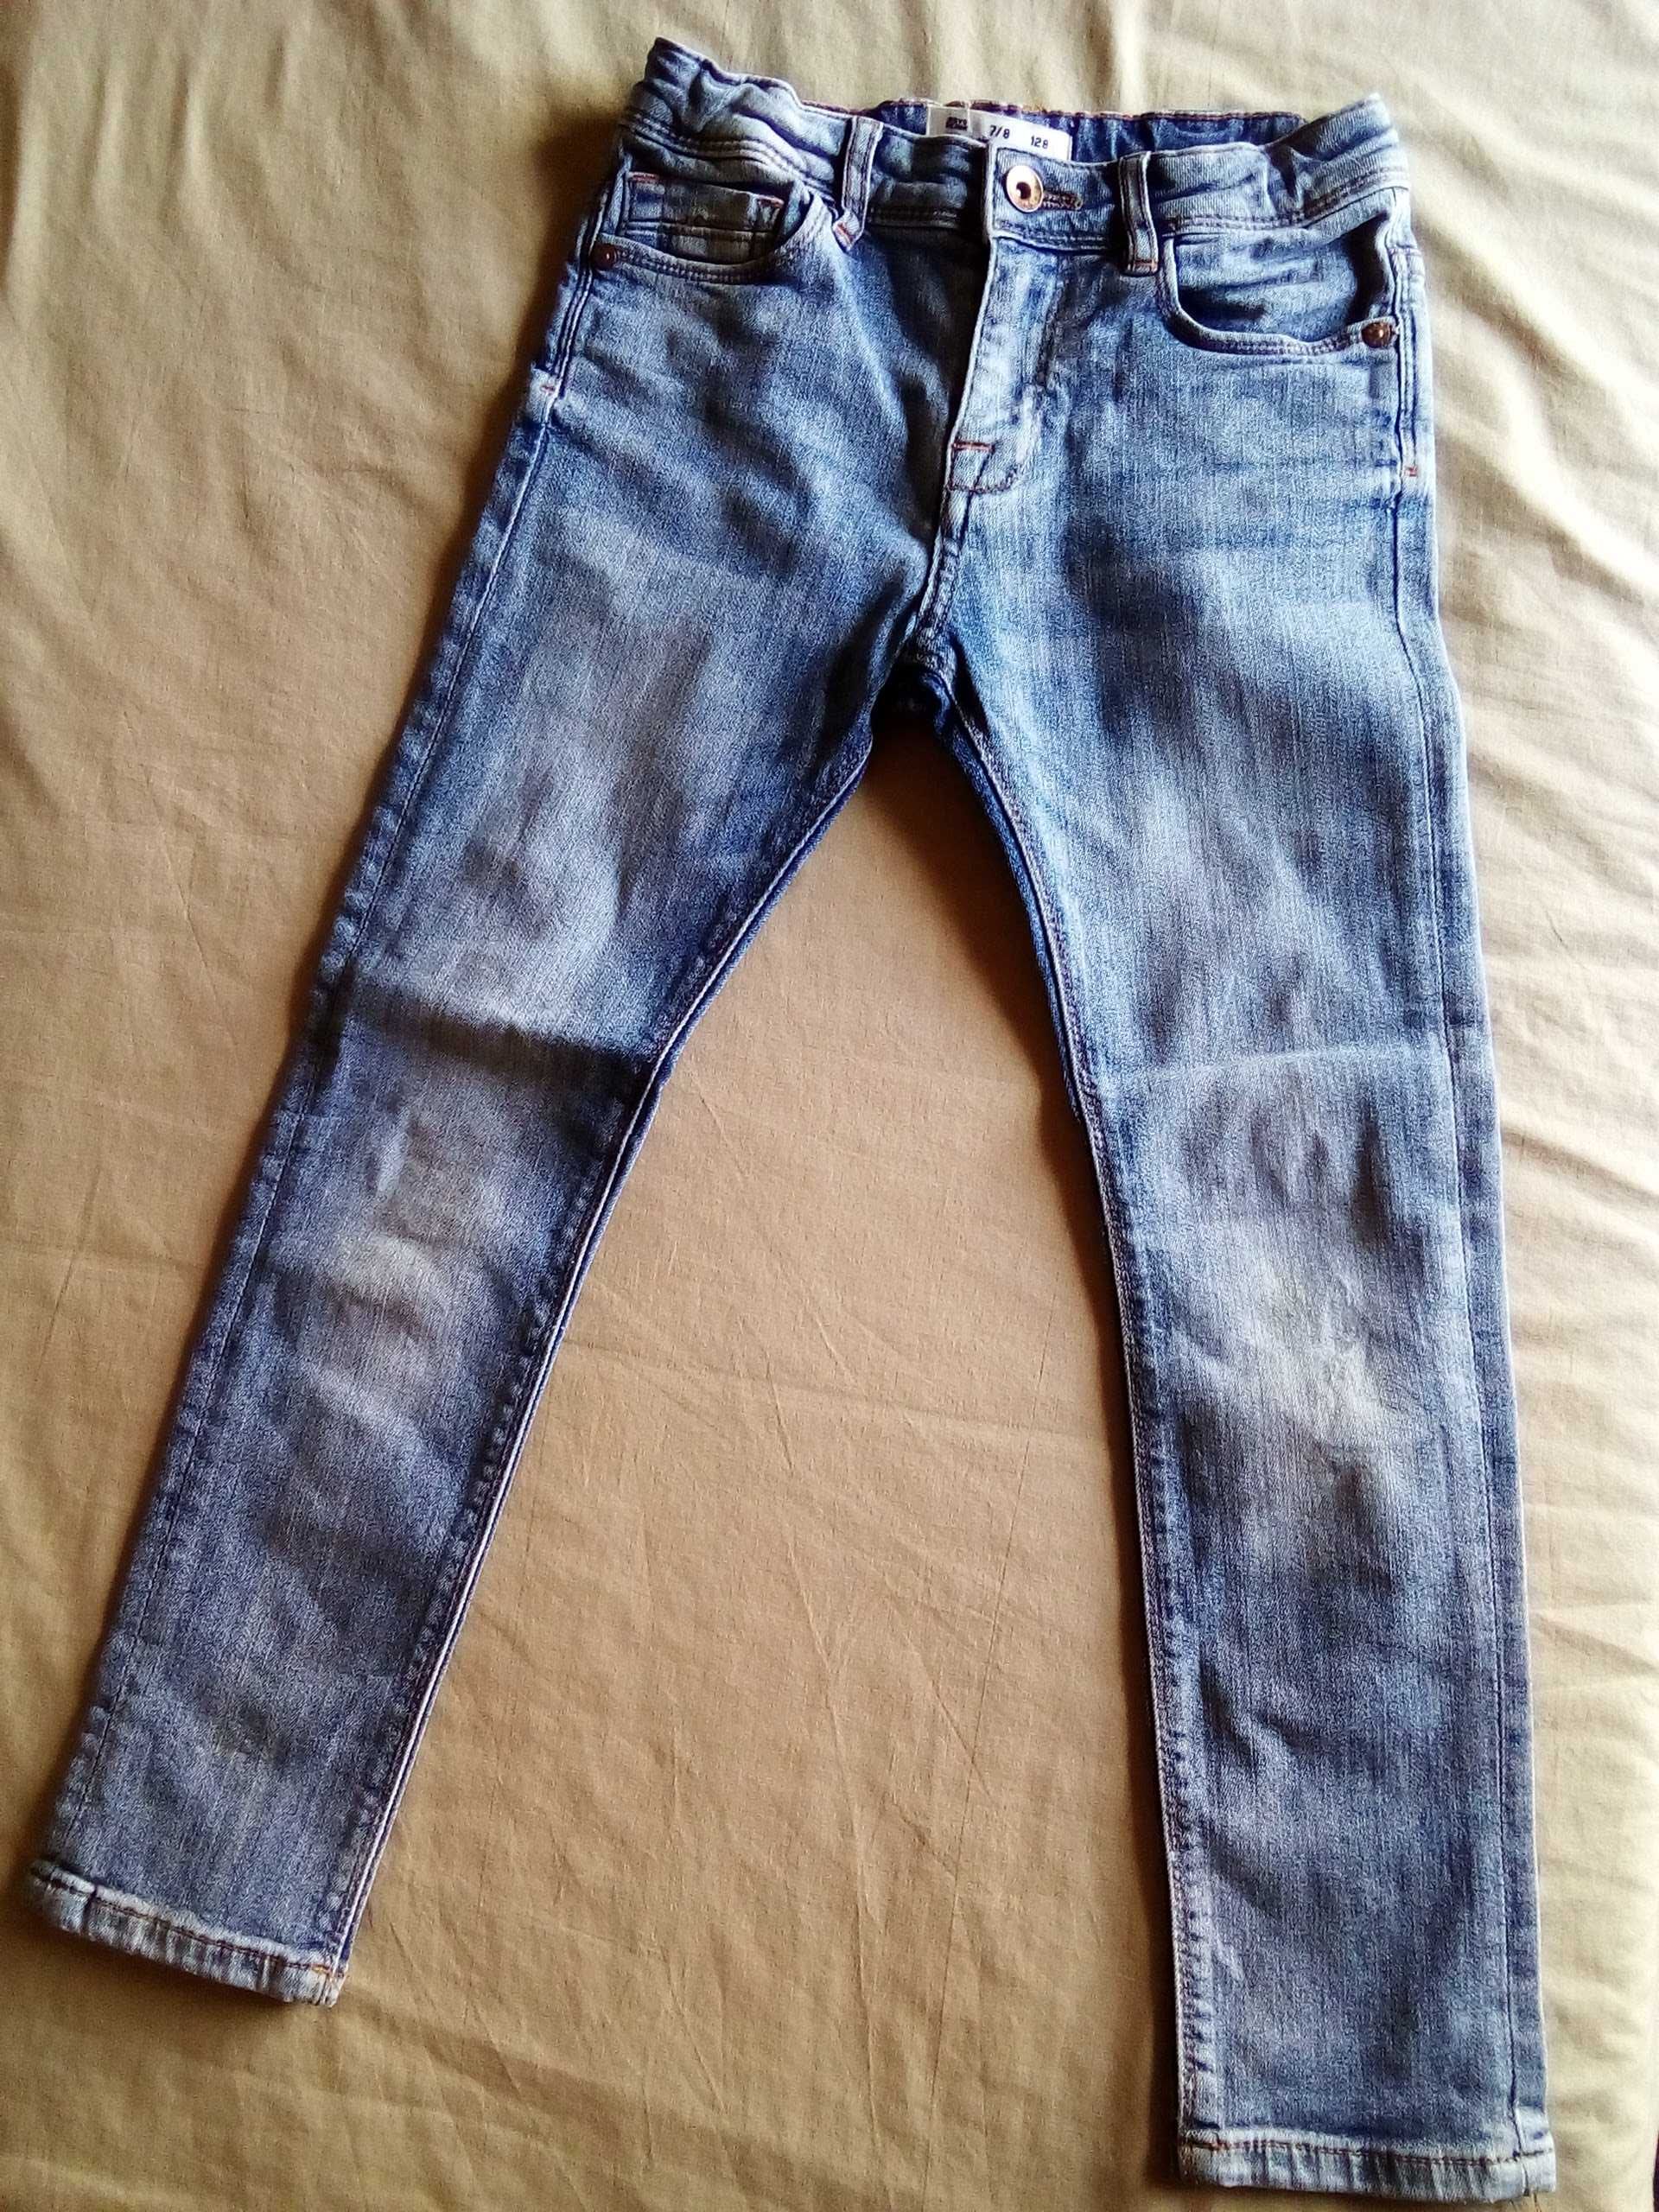 Calças de ganga / jeans 128cm 7/8 anos